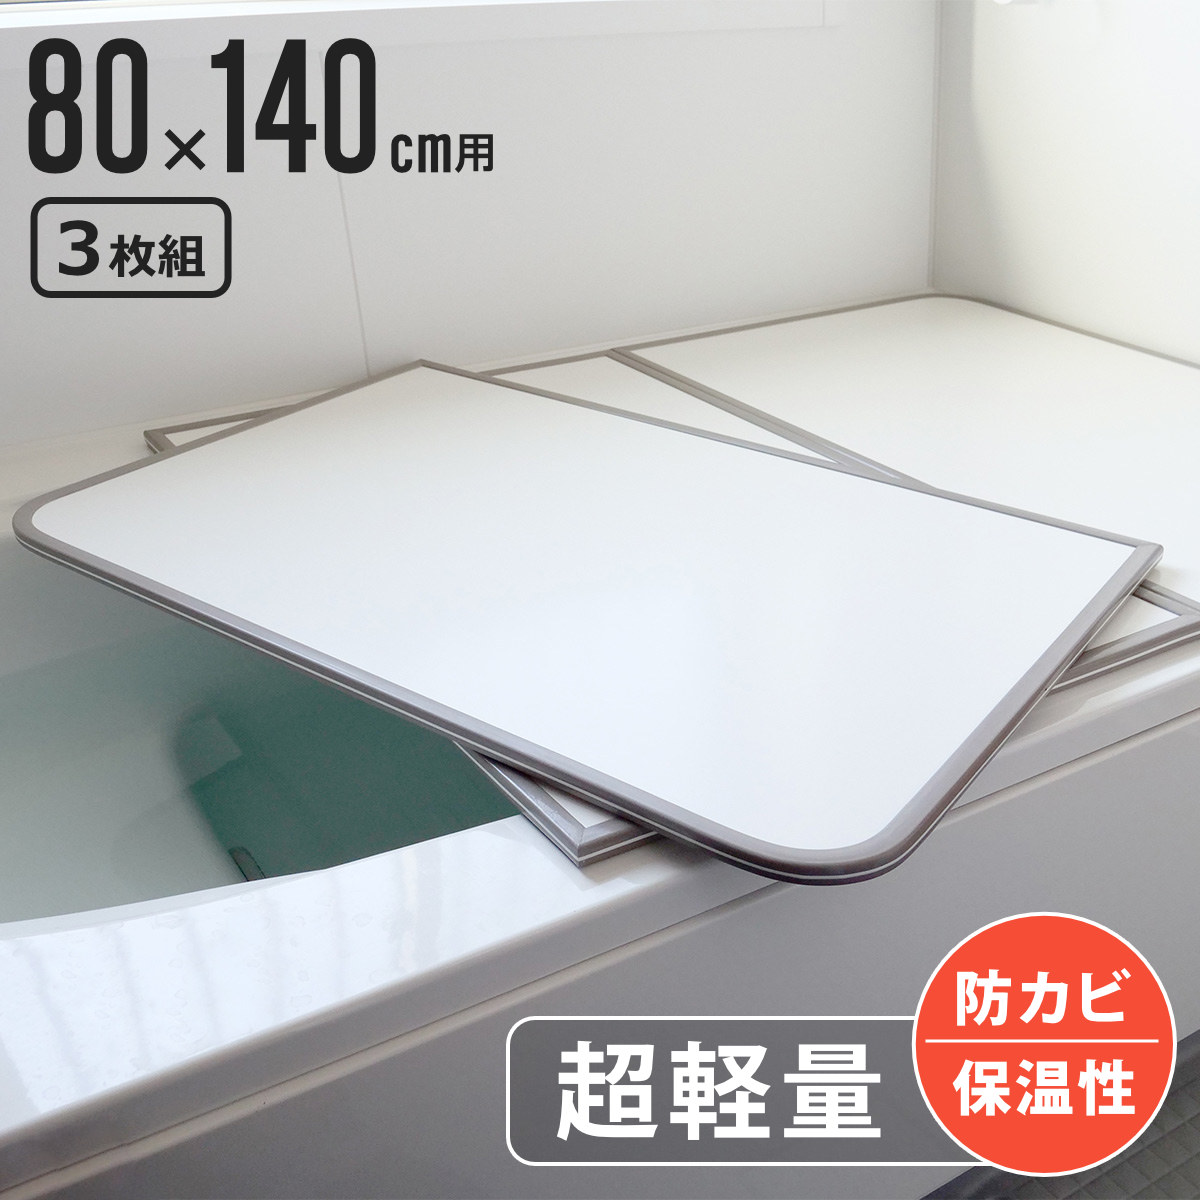  風呂ふた 組み合わせ 軽量 カビの生えにくい風呂ふた W-14 80×140cm 実寸78×138cm 3枚組